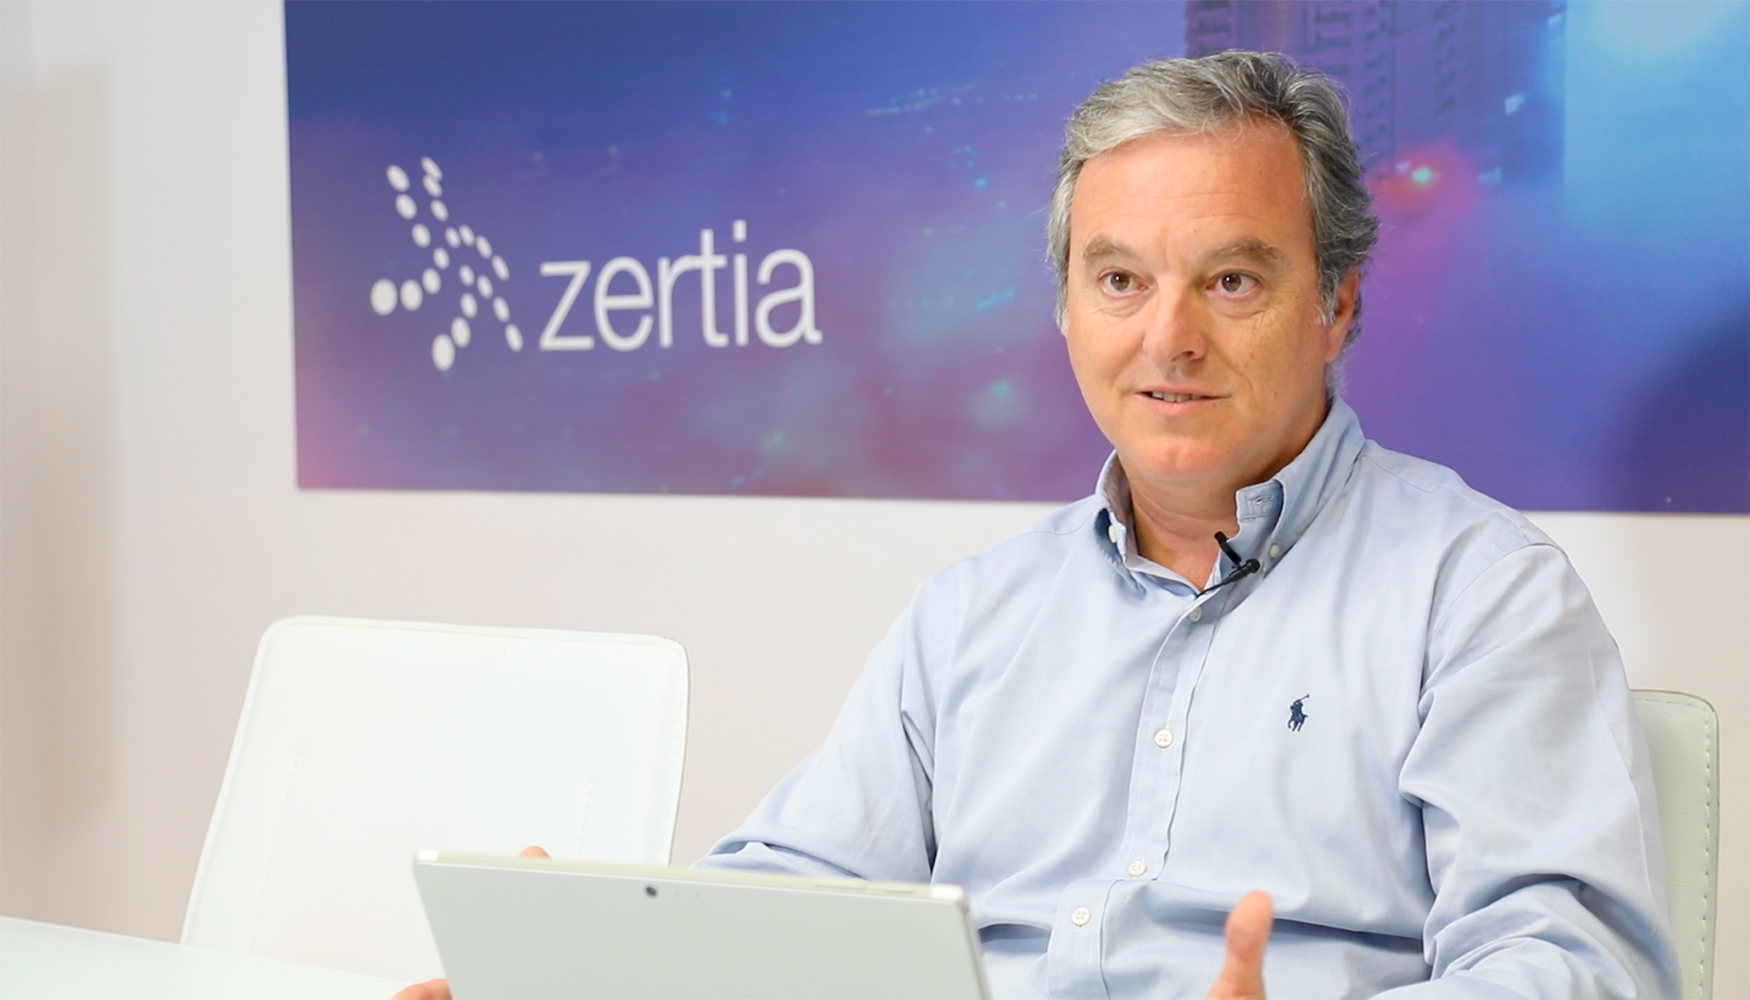 Flix Garca, CEO de Zertia, valora positivamente la seguridad y redundancia que les ofrece Interxion